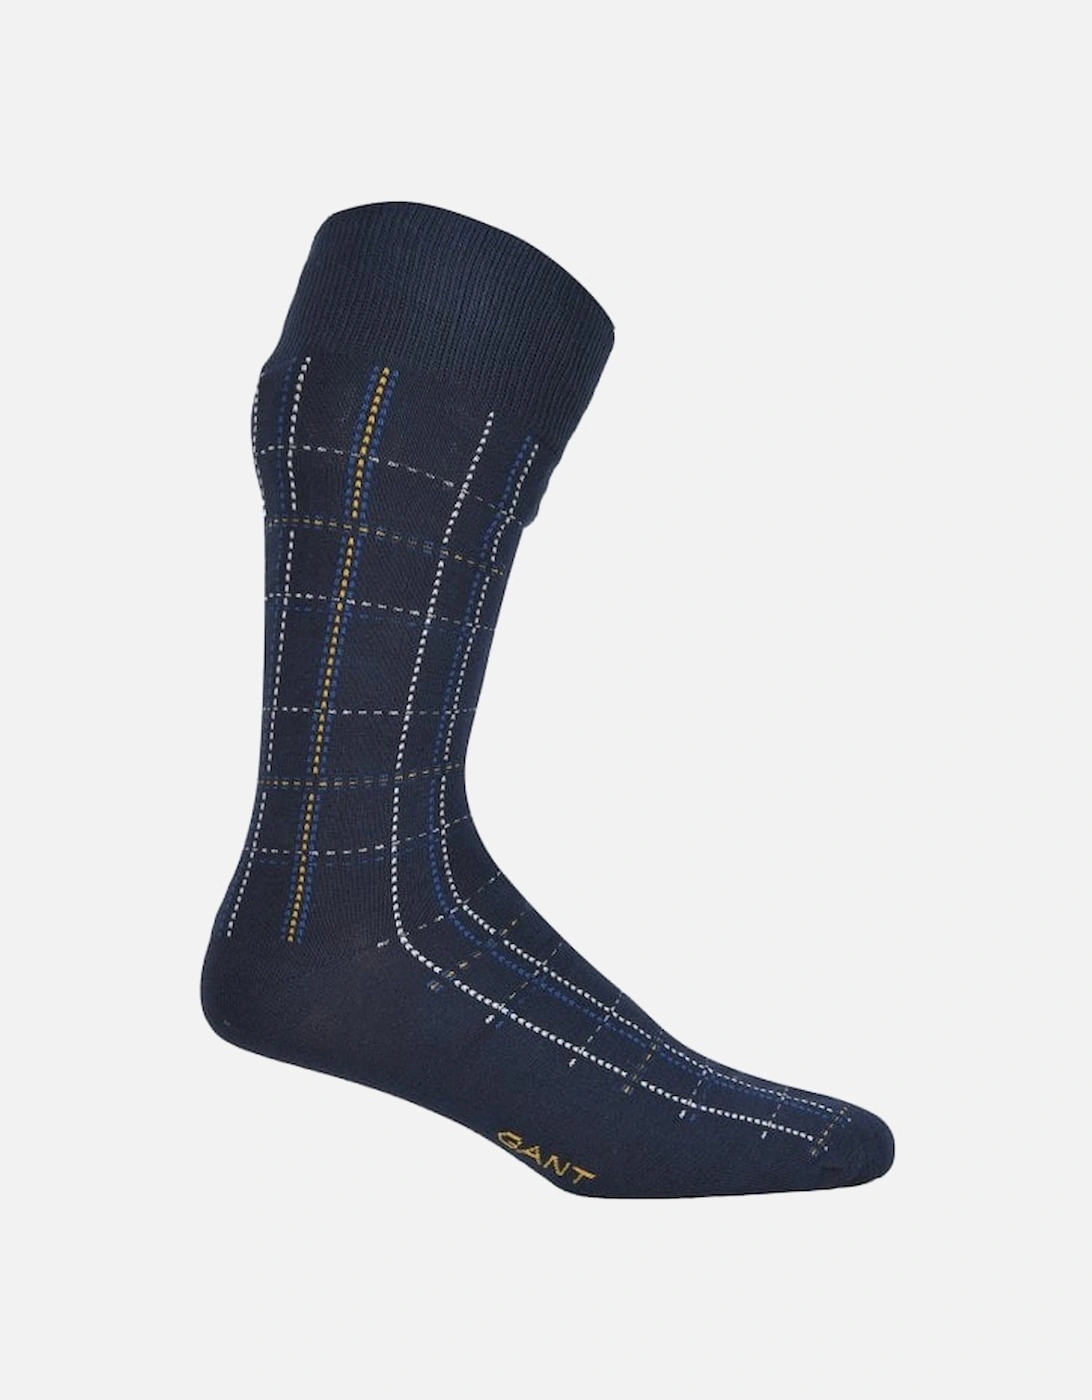 3-Pack Check & Dot Socks Gift Set, Navy/blue